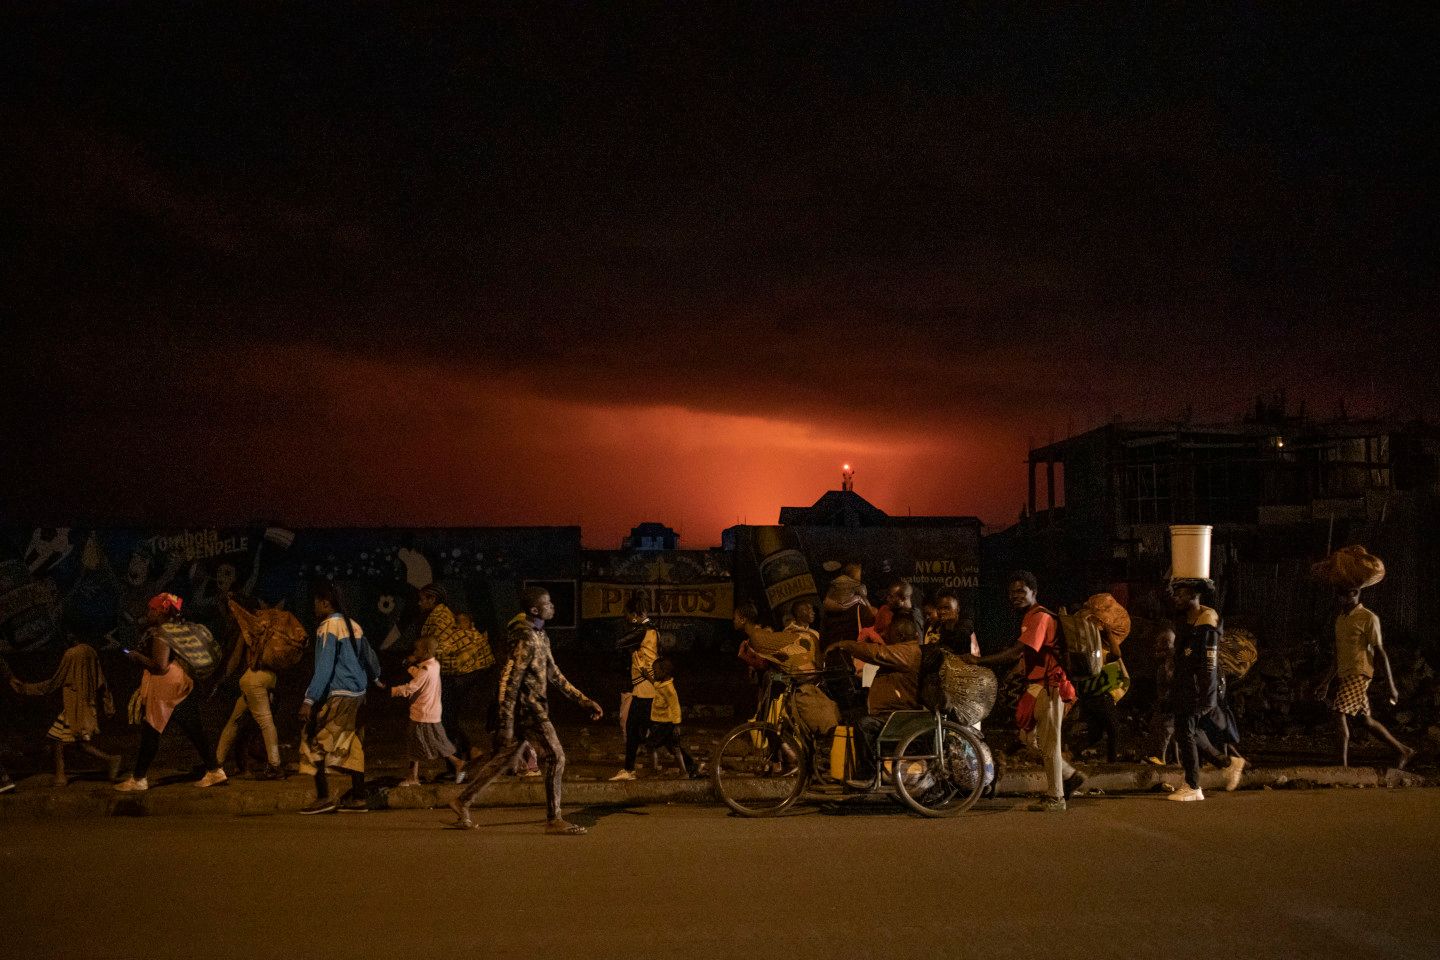 Goma, province du Nord-Kivu, mai 2021. Les habitants fuient l’éruption du Nyiragongo. Le Nyiragongo est l’un des volcans les plus actifs et les plus dangereux du monde. Le 22 mai 2021, il est entré en éruption et une énorme coulée de lave s’est arrêtée à peu de distance du centre de Goma et de son aéroport international, après avoir détruit 17 villages et tué au moins 32 personnes. Environ 20 000 habitants ont perdu leur maison. Le matin suivant, dès que la coulée s’est interrompue, beaucoup sont revenus en ville, mais plusieurs centaines de répliques sismiques ont affecté la population.